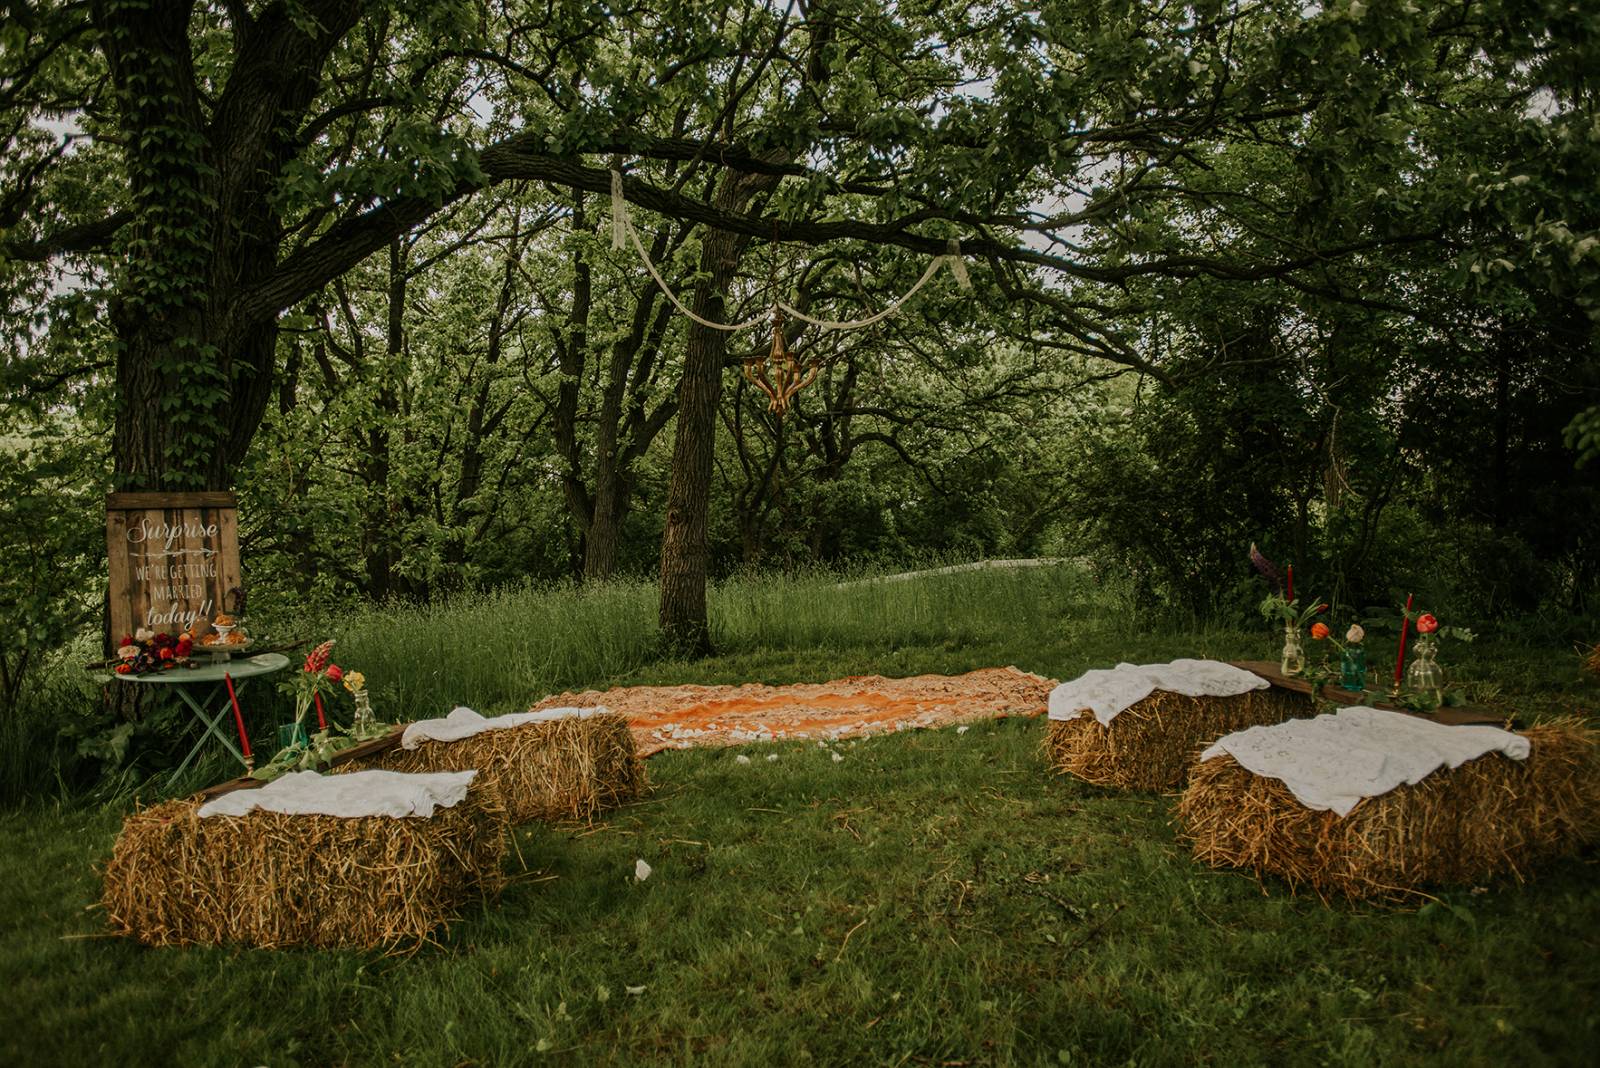 midwest farm wedding, vintage boho wedding, vintage rentals, outdoor ceremony, outdoor wedding, hay